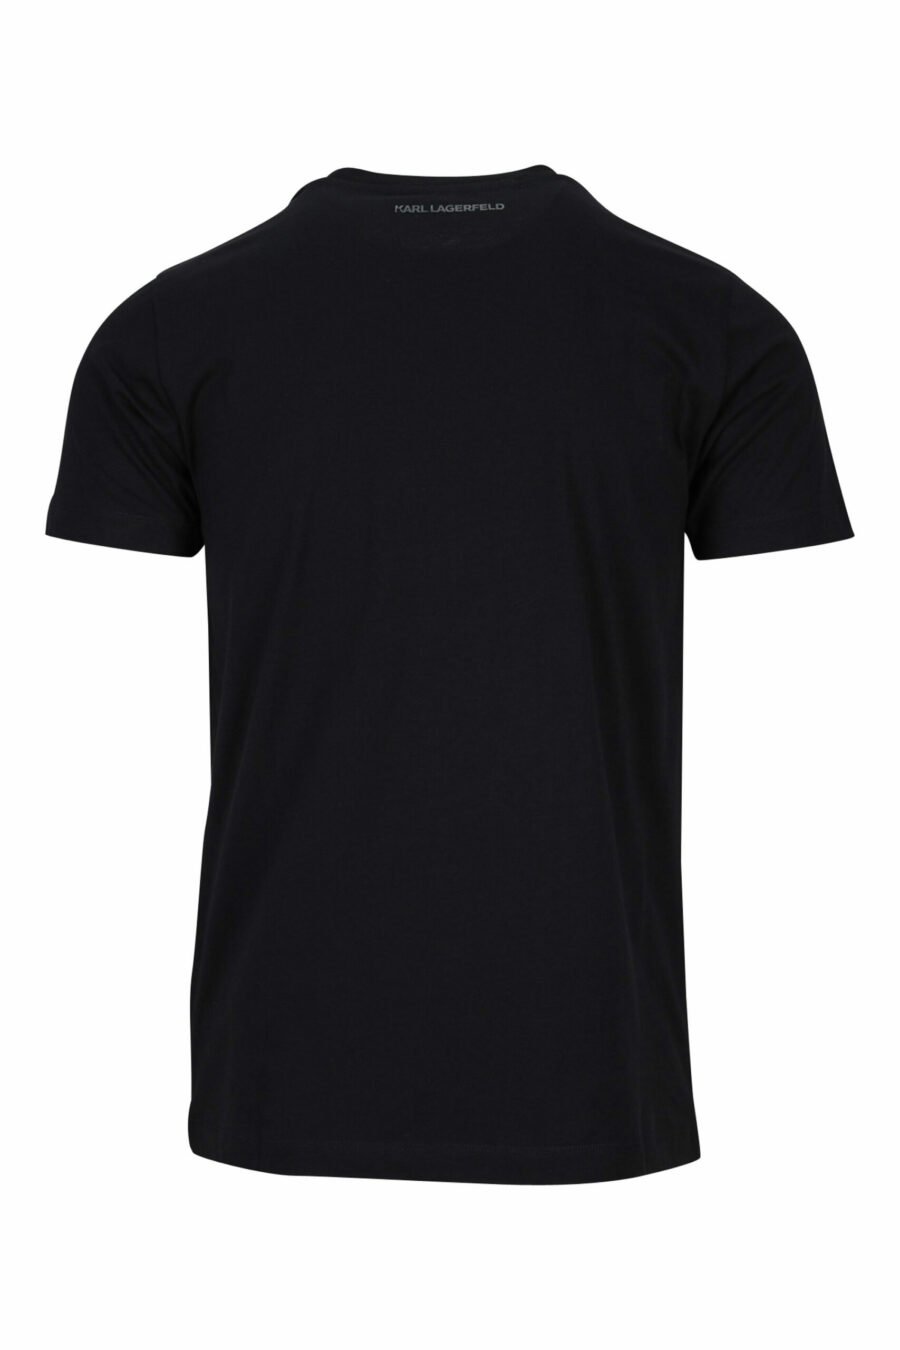 Camiseta negra con maxilogo de goma monocromático - 4062226679480 1 scaled